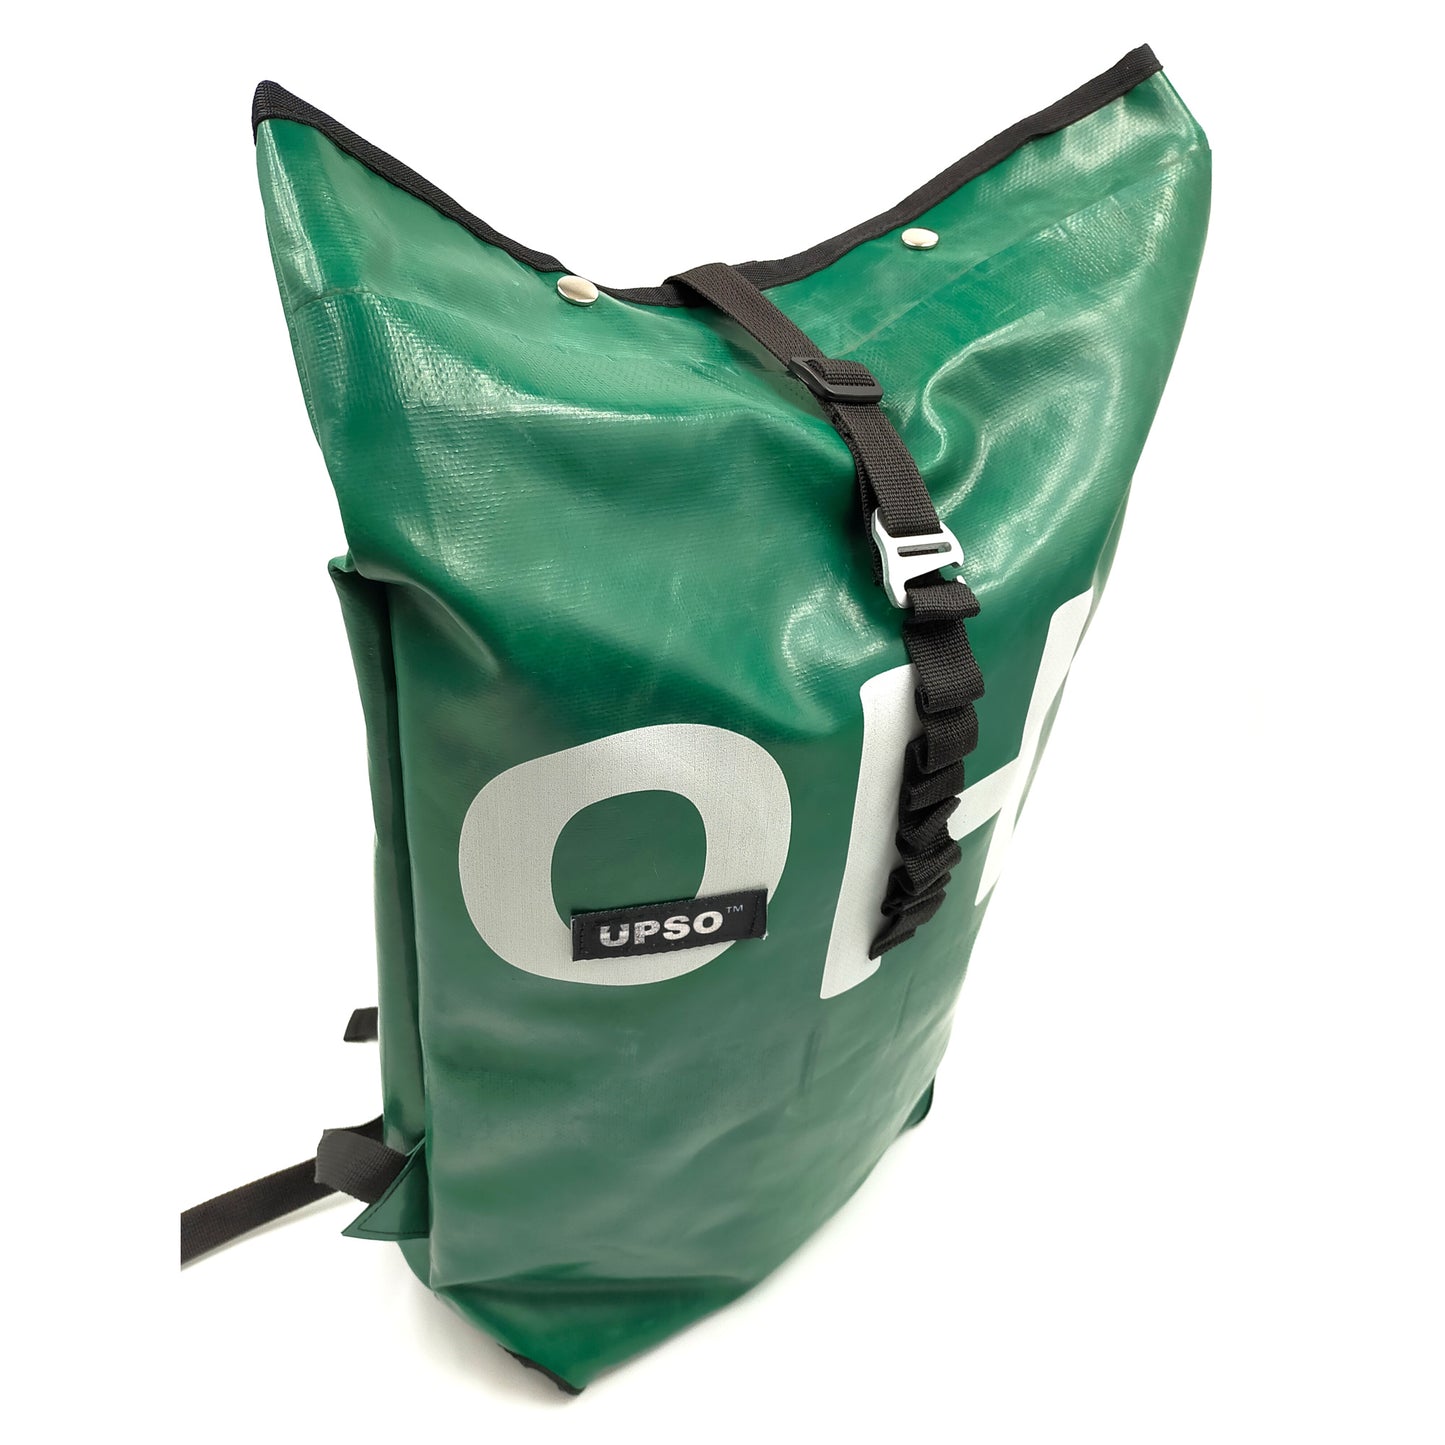 Burtonwood Backpack – Green – BW031218